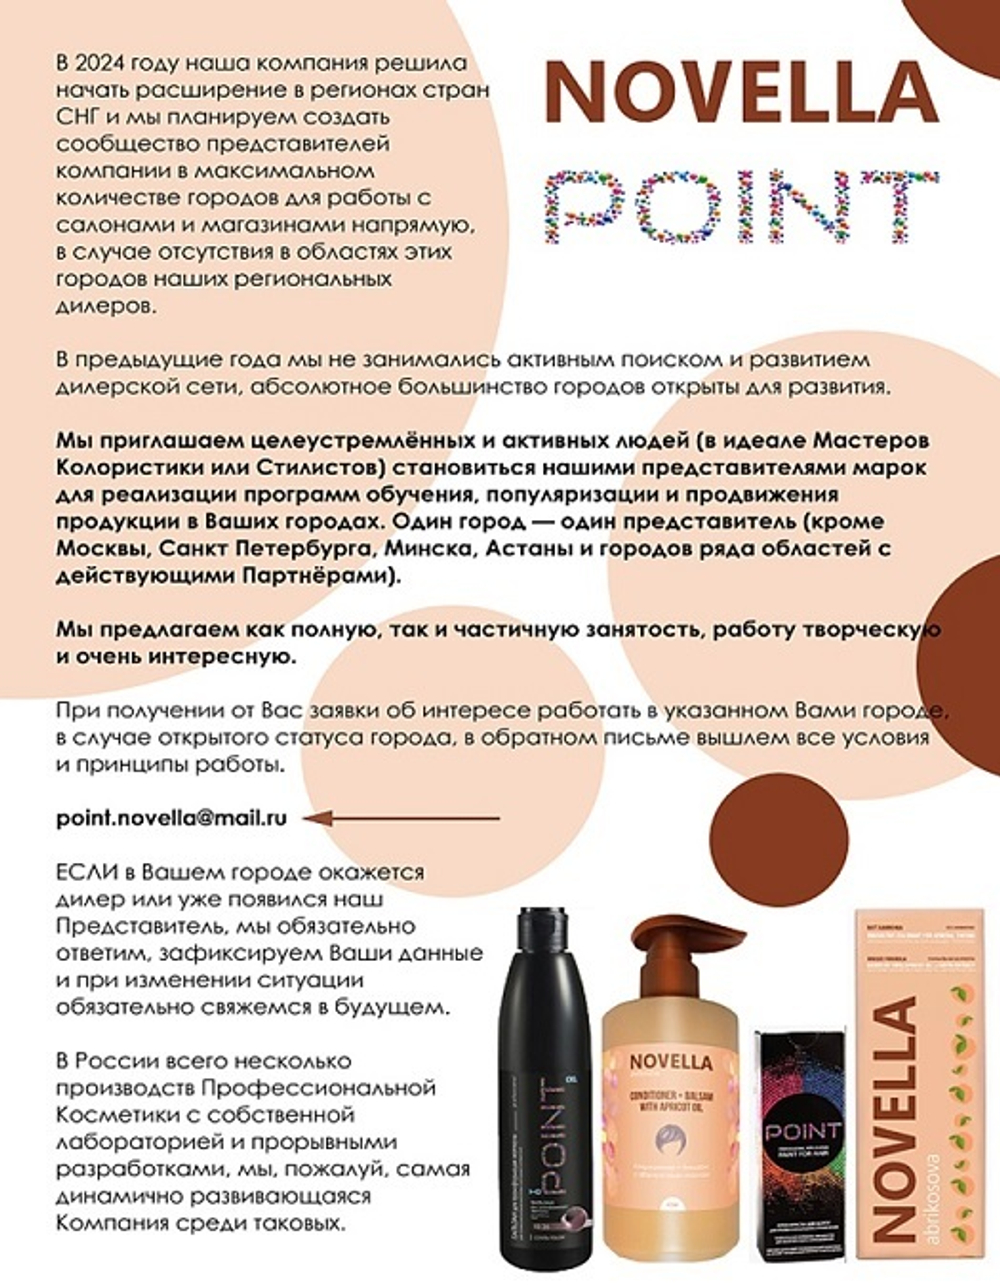 Novella Abrikosova Шампунь глубокой очистки, эффективное очищение поверхности волоса, с углём и абрикосовым абразивом, 400мл